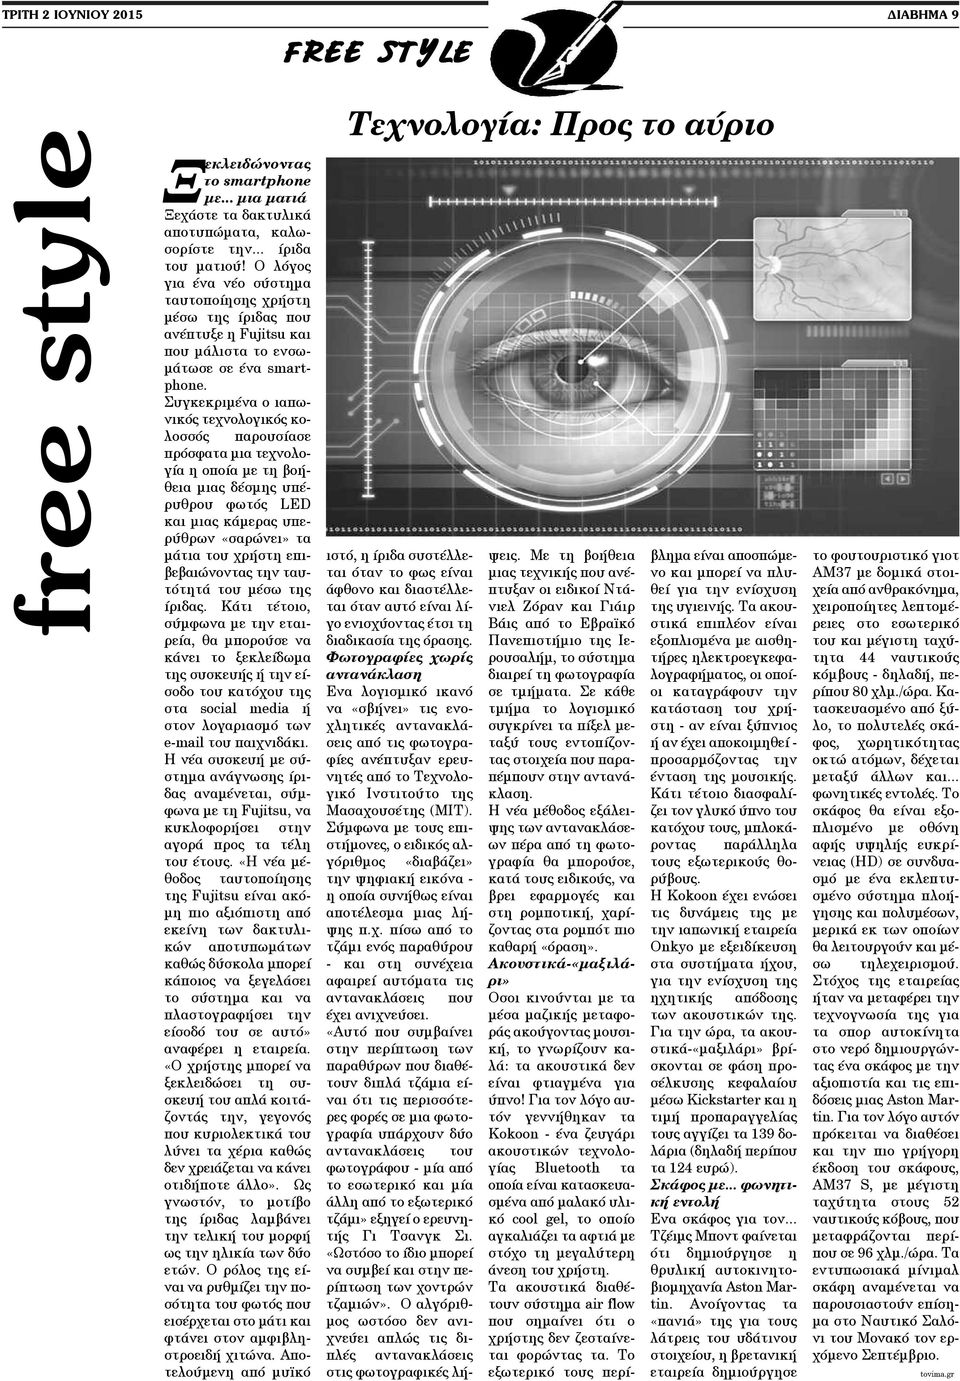 Συγκεκριμένα ο ιαπωνικός τεχνολογικός κολοσσός παρουσίασε πρόσφατα μια τεχνολογία η οποία με τη βοήθεια μιας δέσμης υπέρυθρου φωτός LED και μιας κάμερας υπερύθρων «σαρώνει» τα μάτια του χρήστη